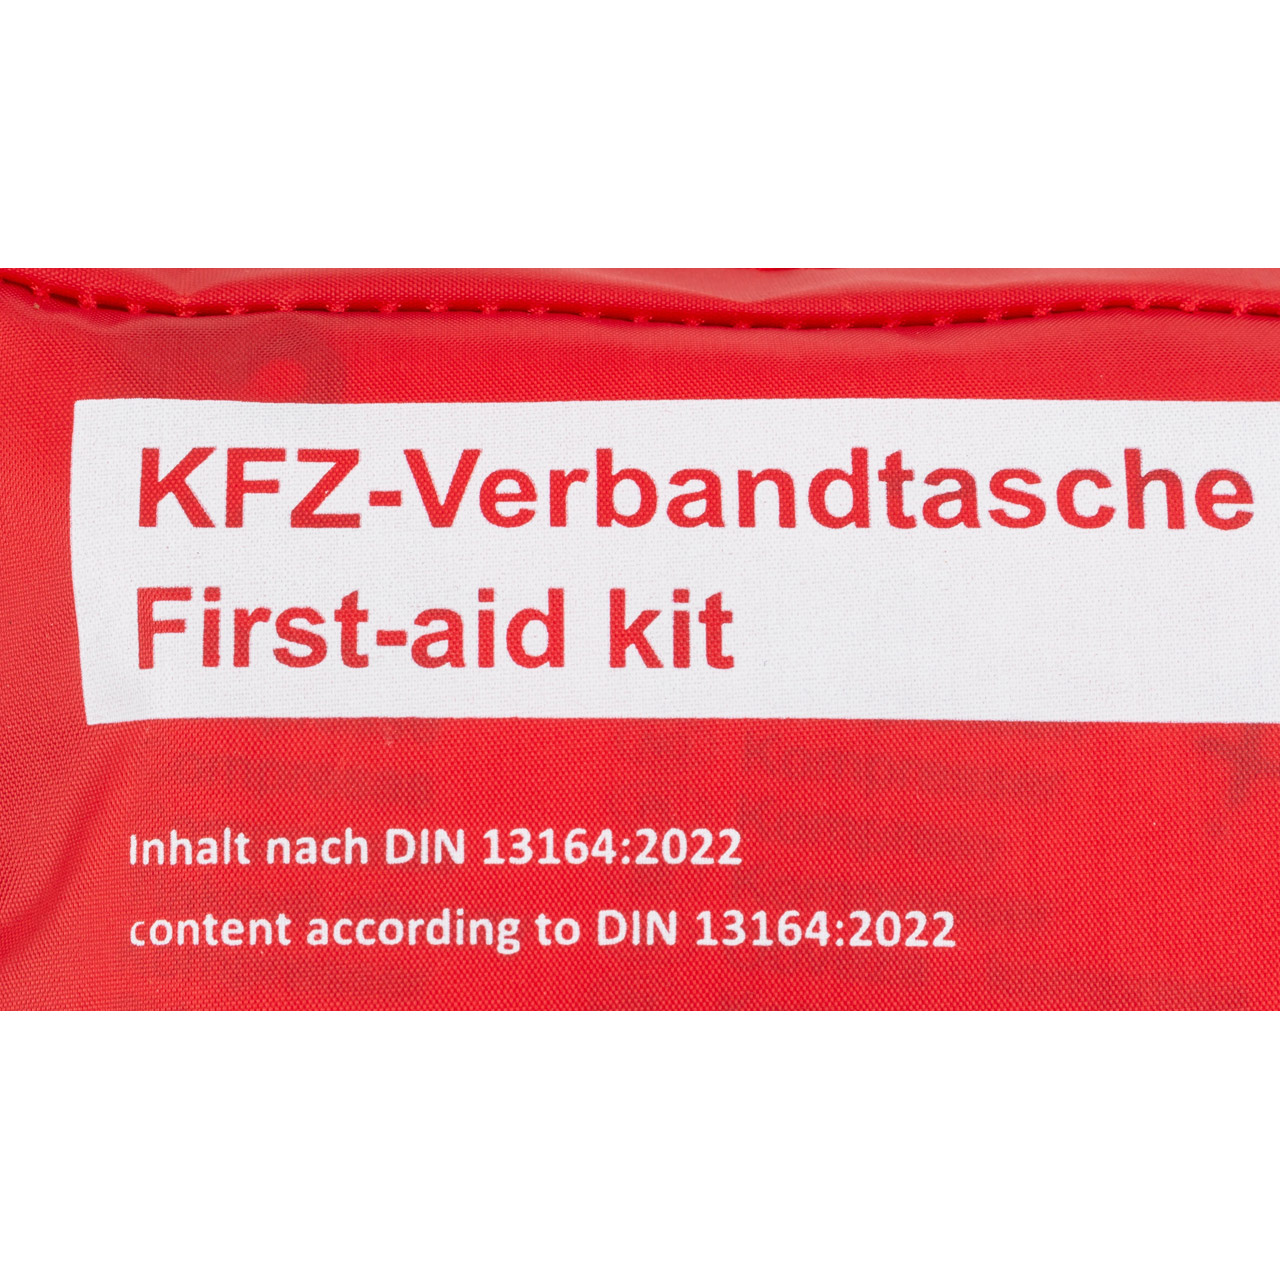 PETEX Auto PKW KFZ Verbandtasche Verbandkasten Erste-Hilfe ROT DIN13164-2022 (MHD 01.2028)